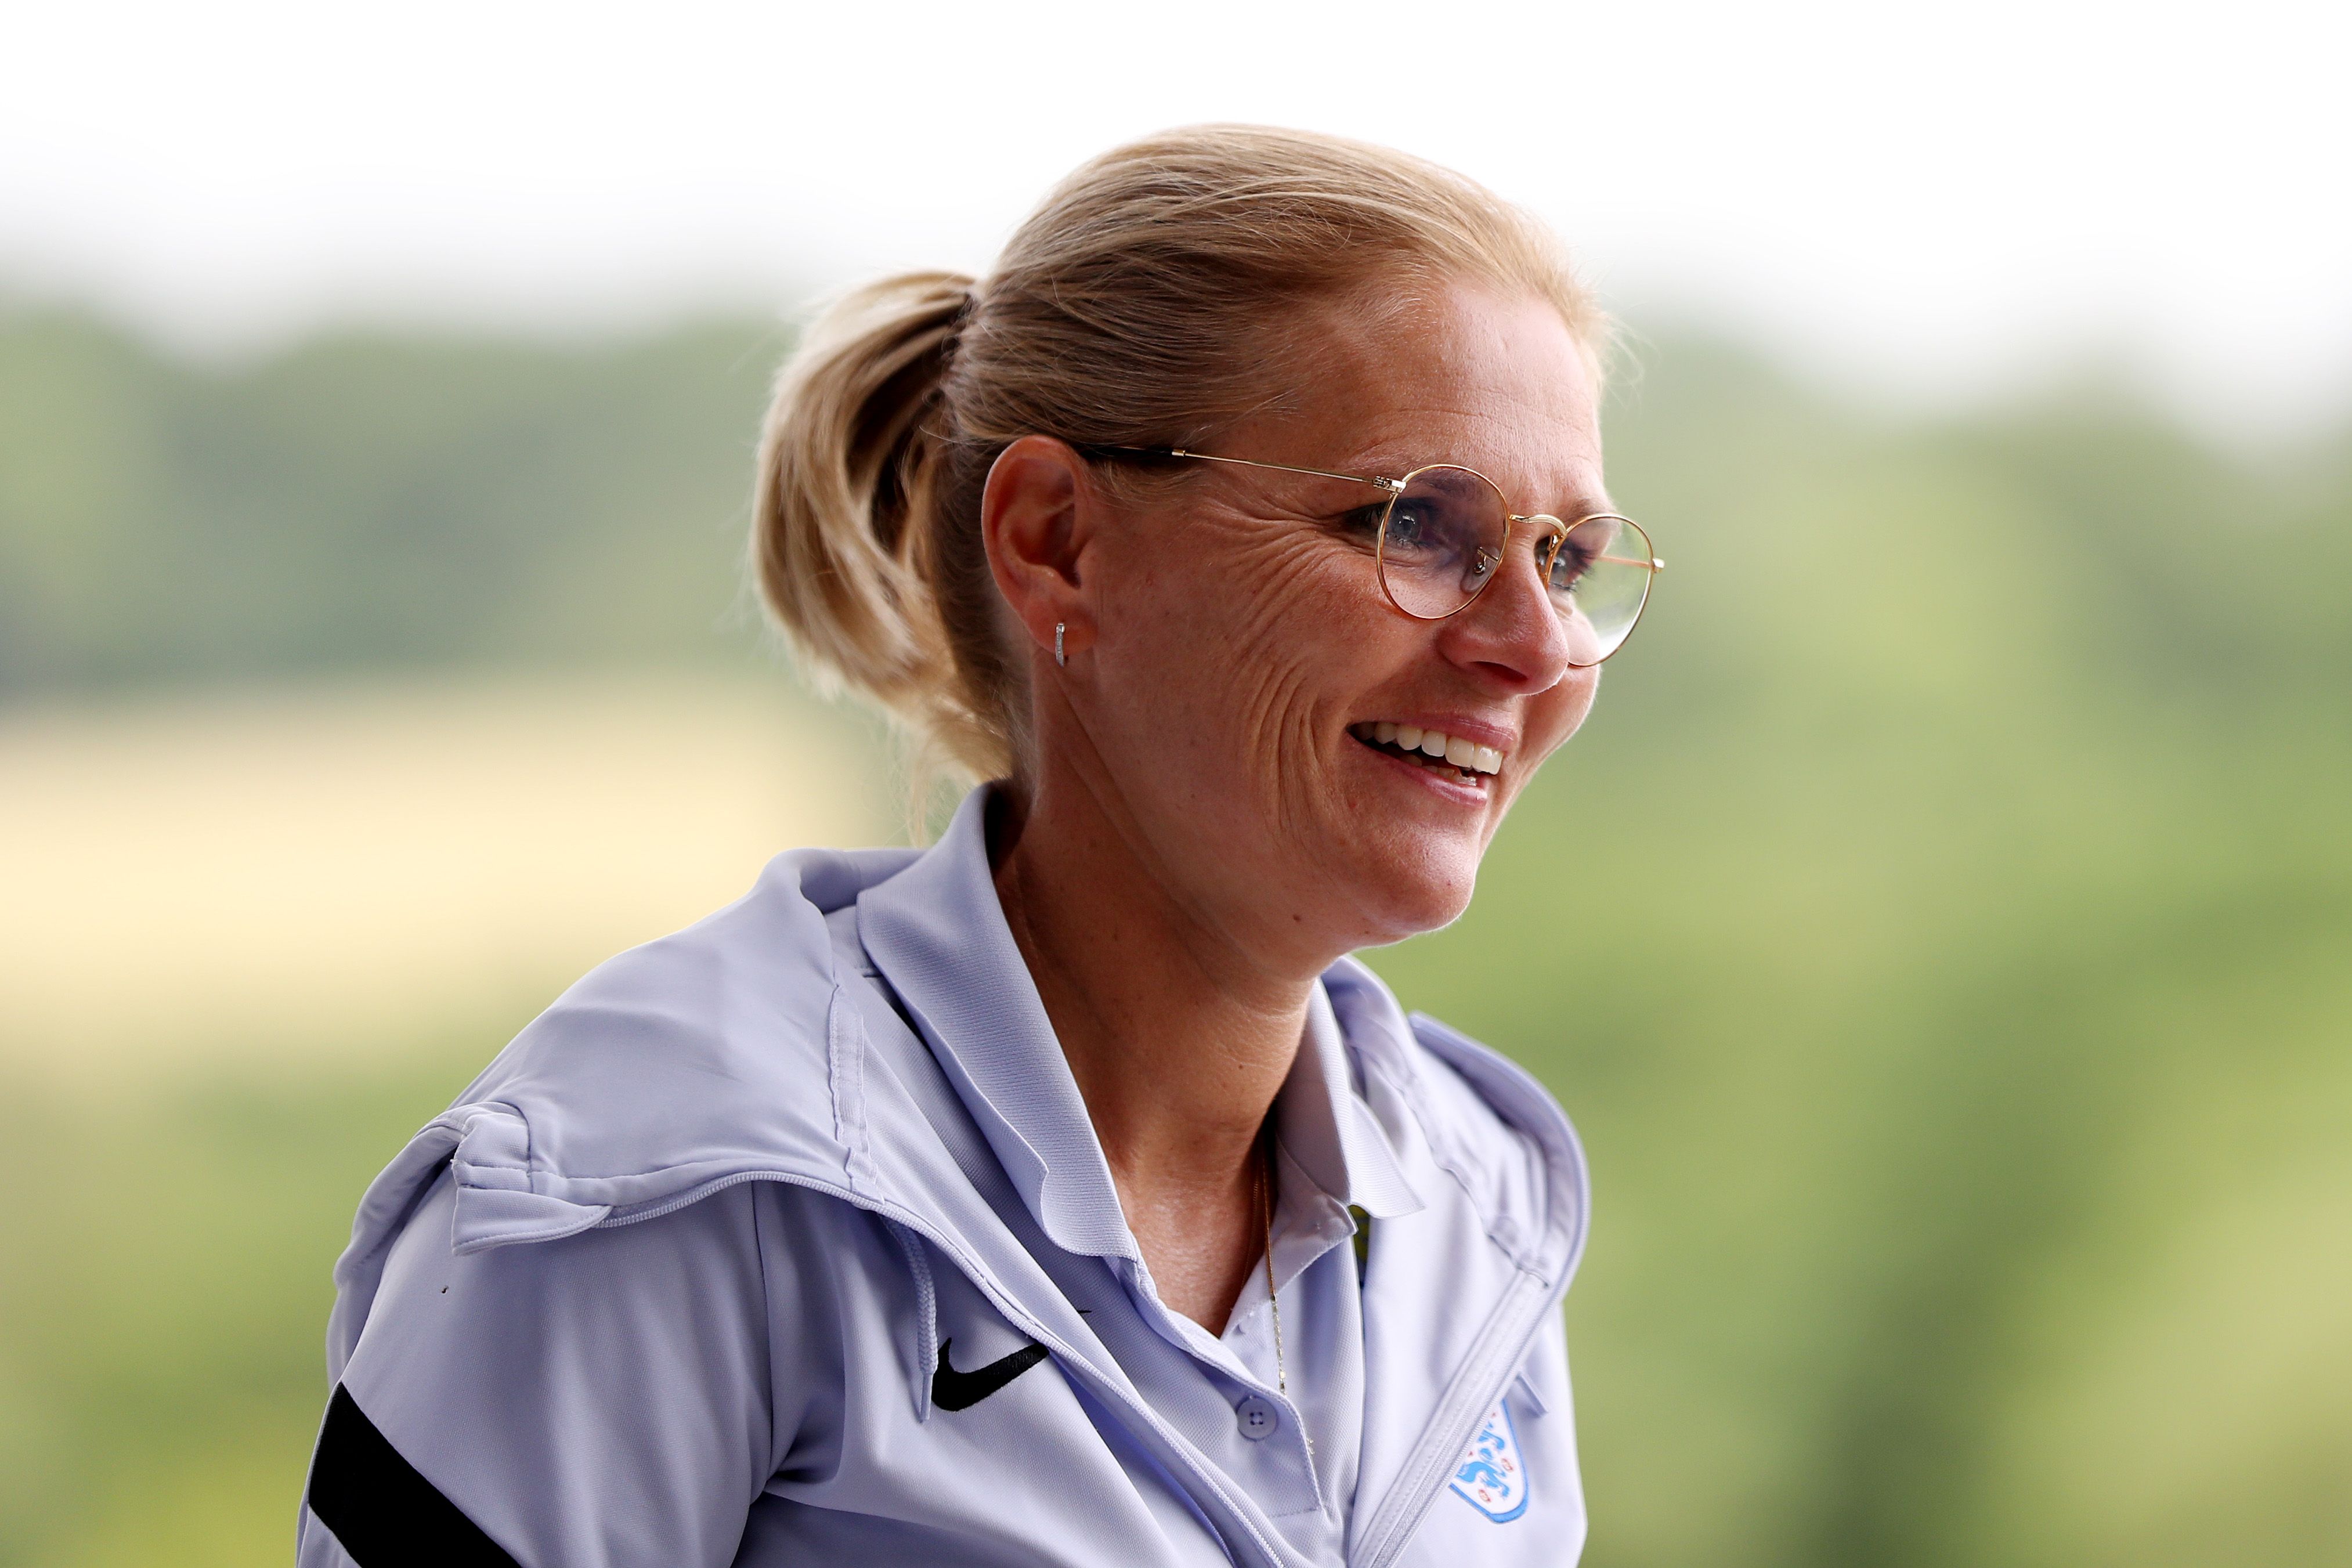 Sarina Wiegman, Manager of England